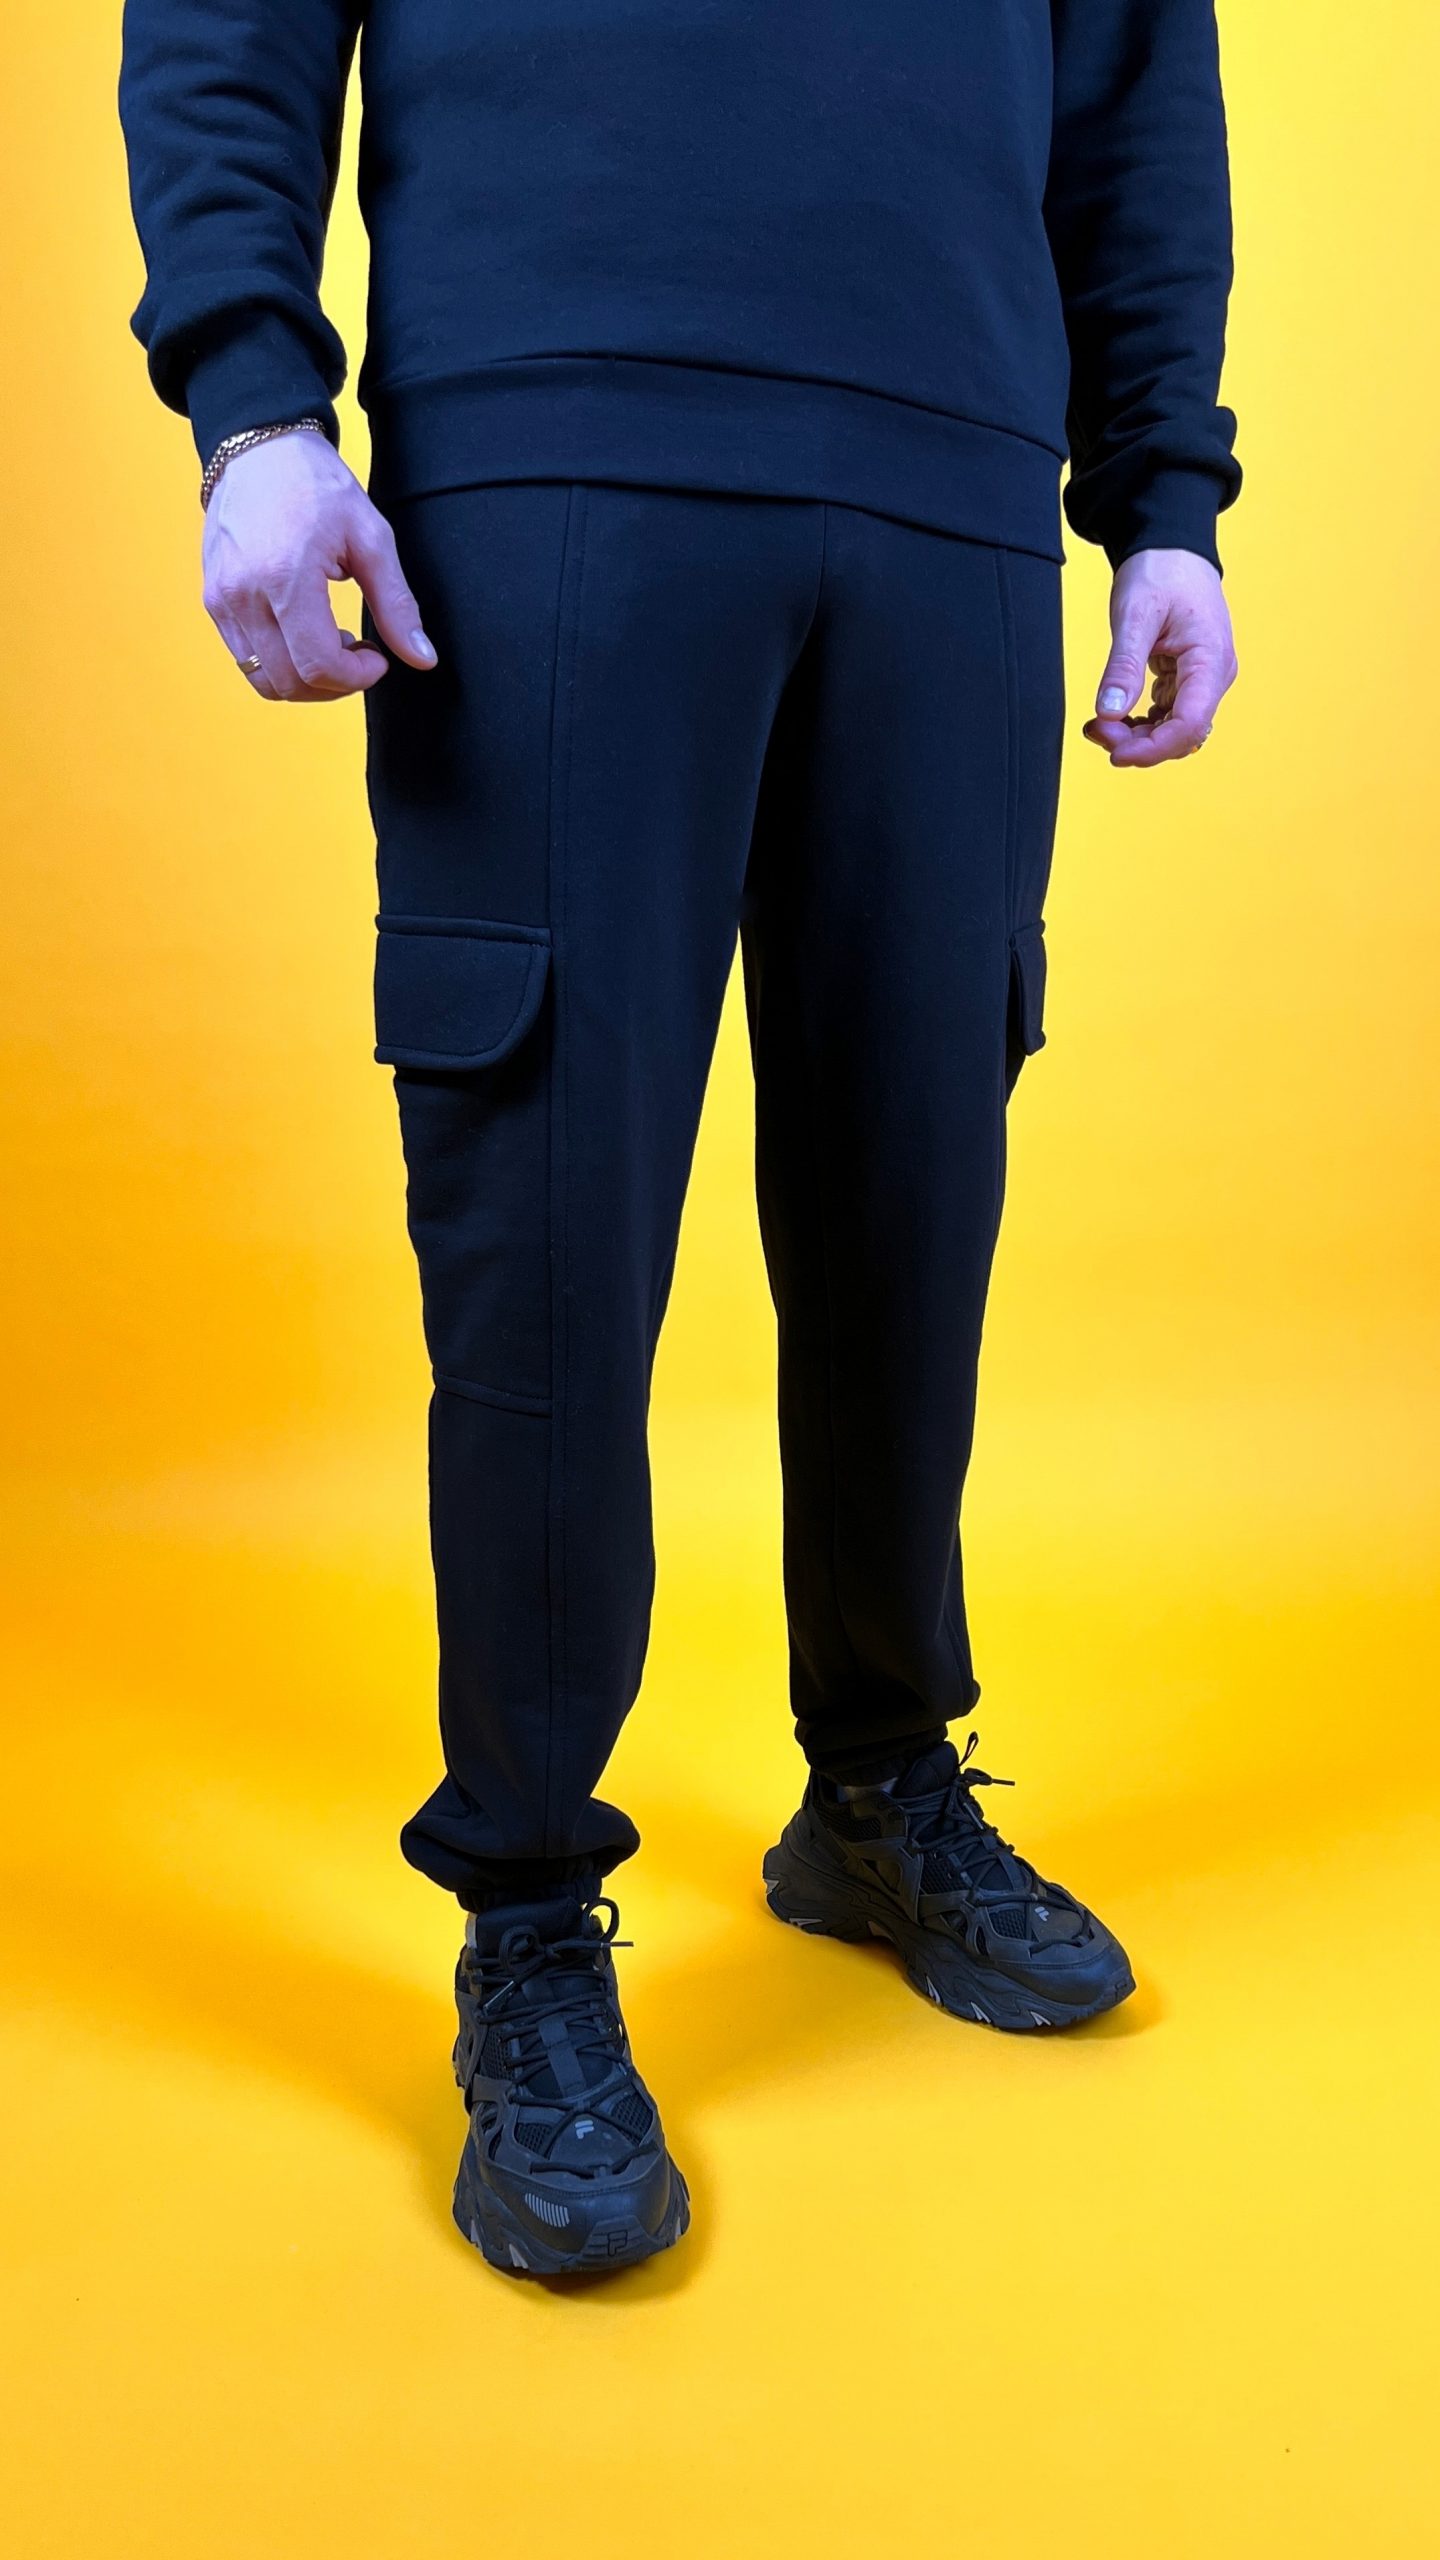 Бесплатная выкройка мужских трикотажных брюк больших размеров